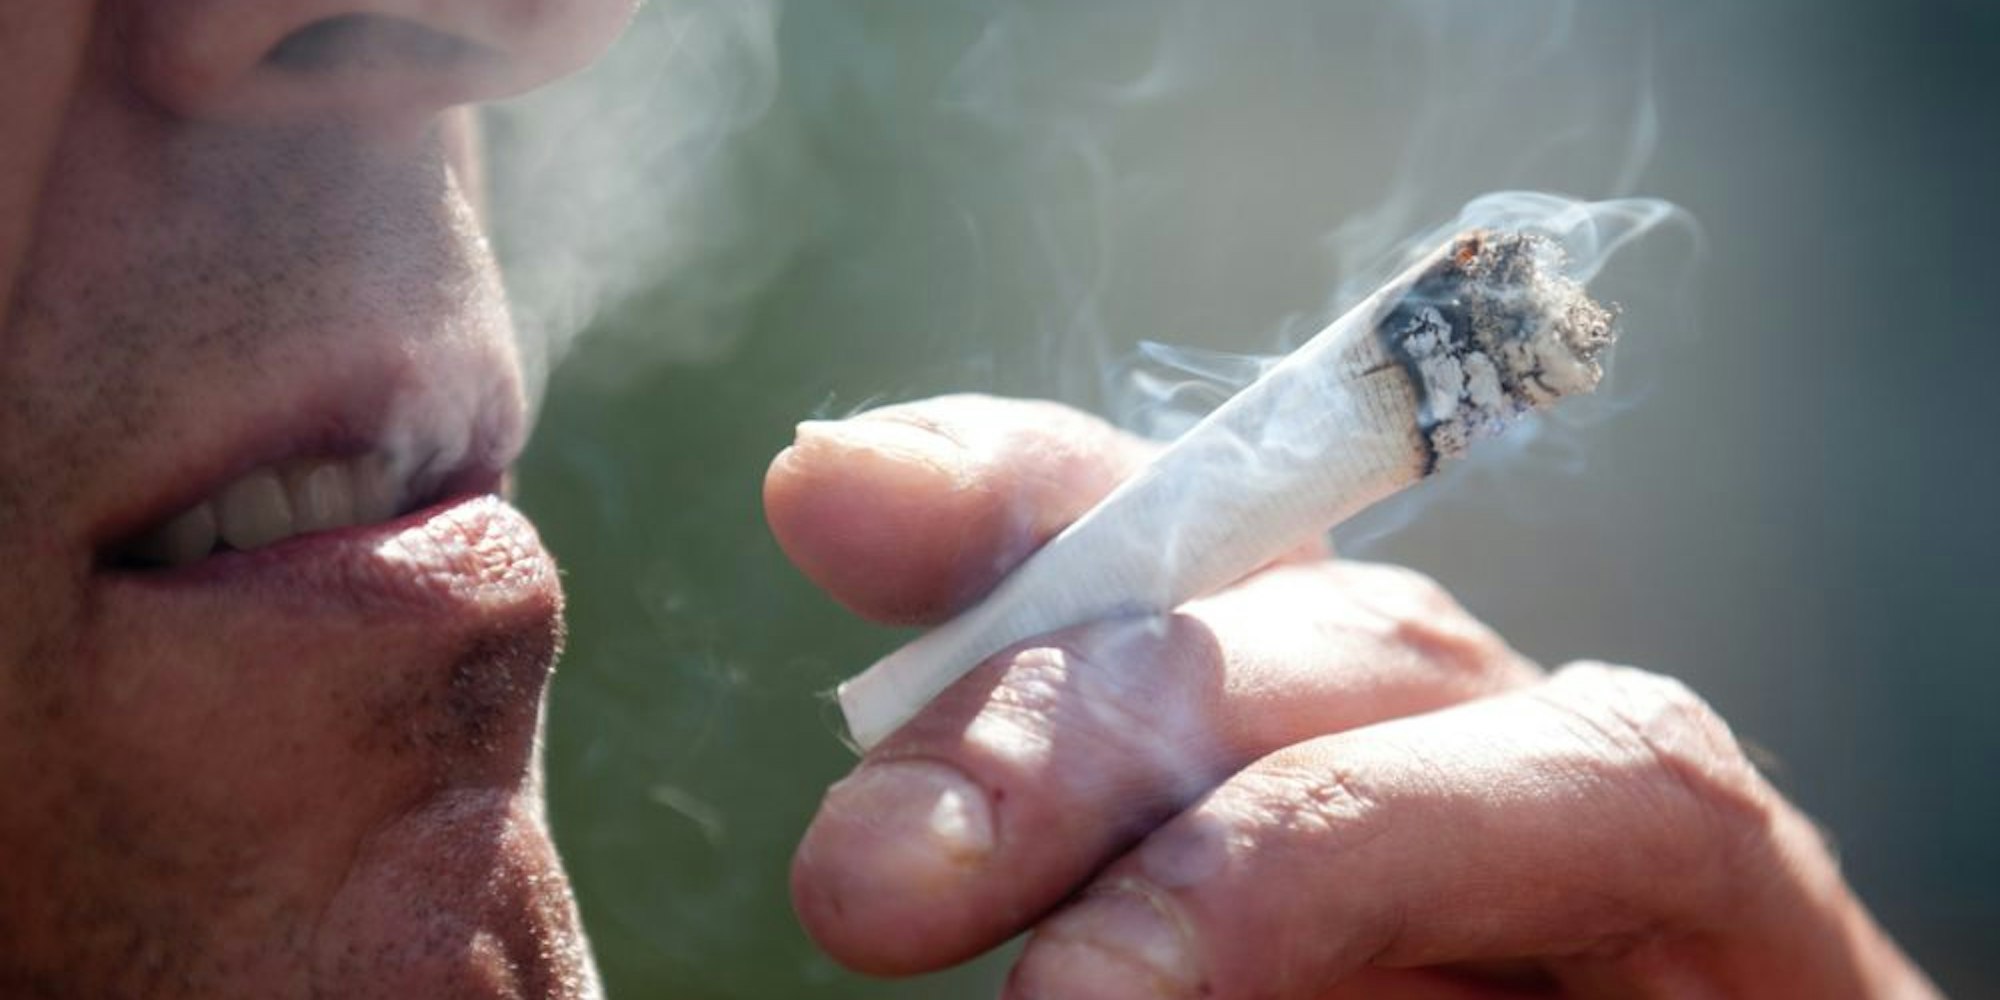 Seit zwei Jahren als Medizin legalisiert: Die Cannabis-Zigarette kann Patienten mit schweren Erkrankungen zur Linderung der Symptome verschrieben werden.